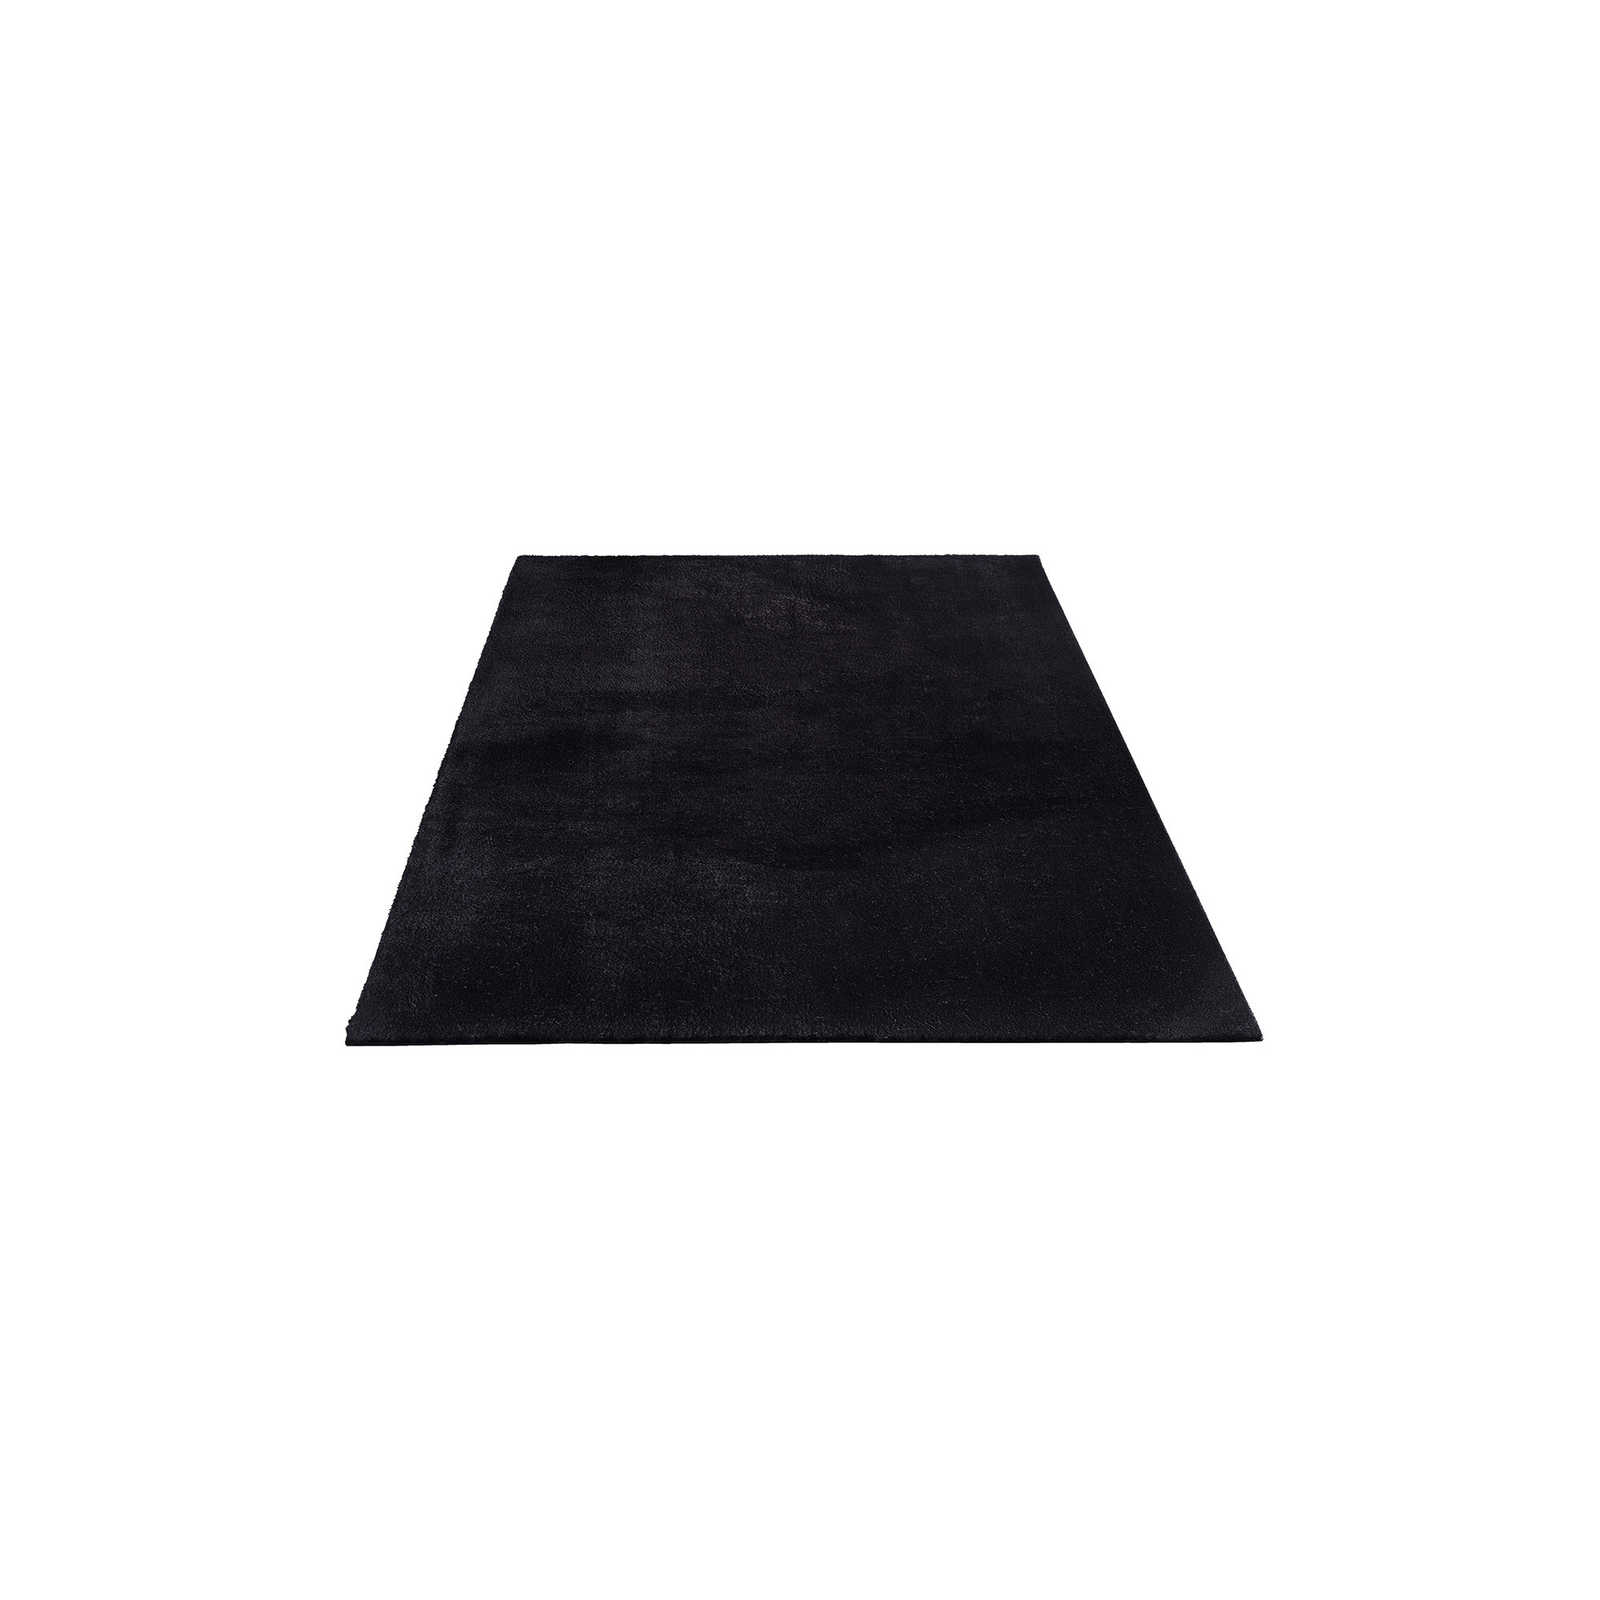 Velvety high pile carpet in black - 200 x 140 cm
